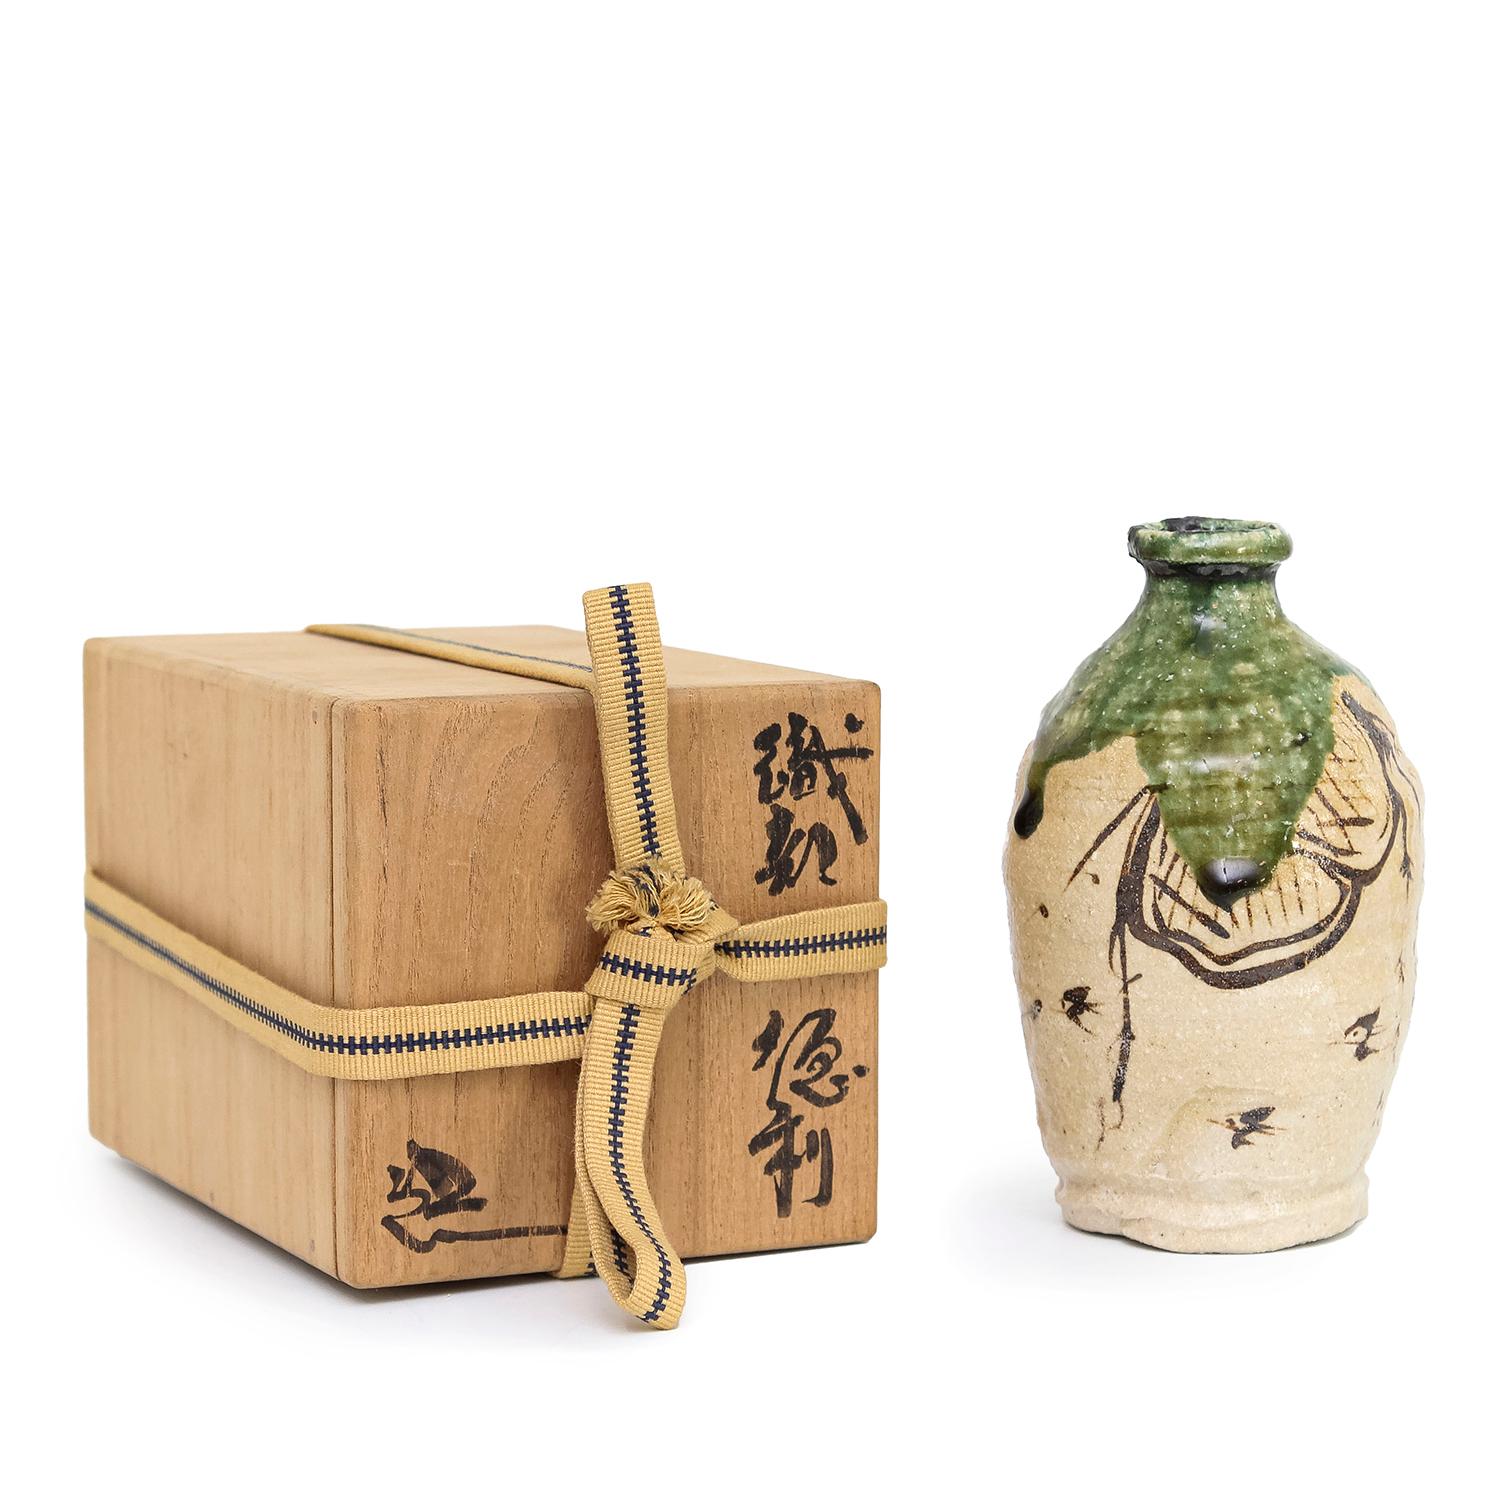 Suzuki Goro 
Oribe Sake Flasche mit Box (INV# NP3436)
Steingut, Unterglasur und Oribe-Glasur
5,75 x 3,5 x 3,5"
Datum unbekannt
unterzeichnet 